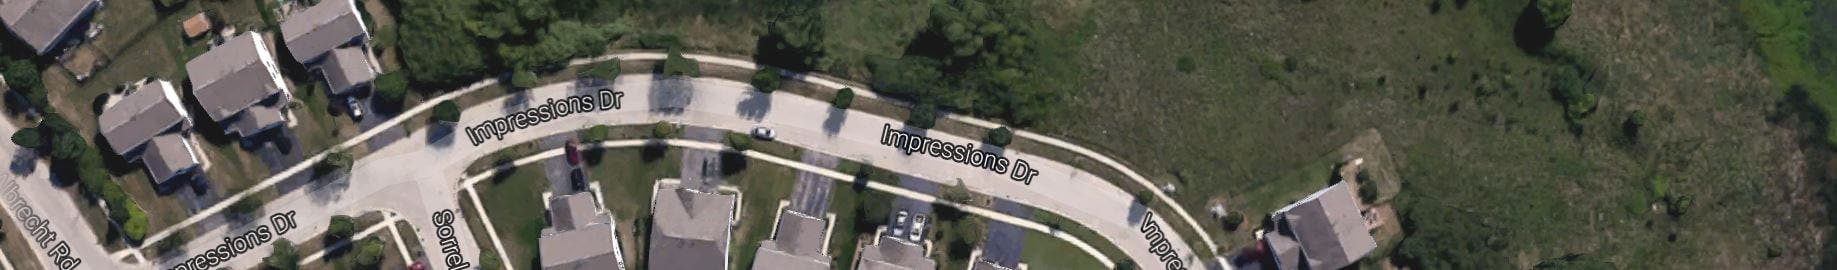 impressions drive